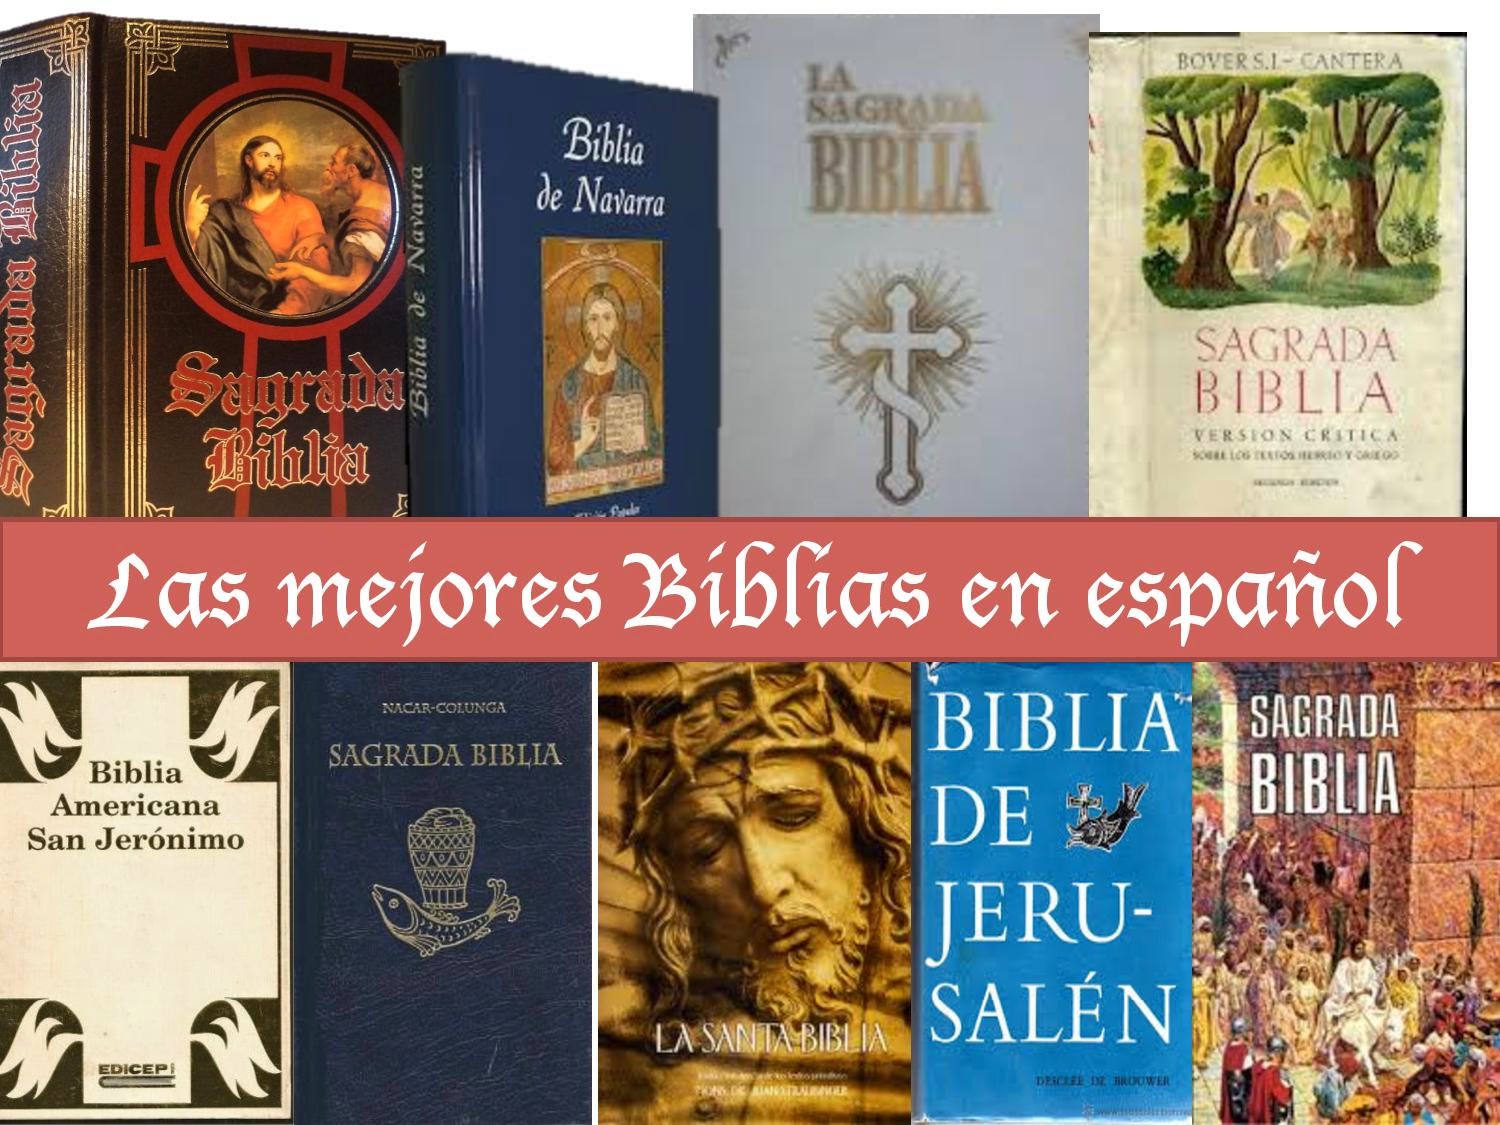 La Biblia en español: Las mejores traducciones de la Biblia en español